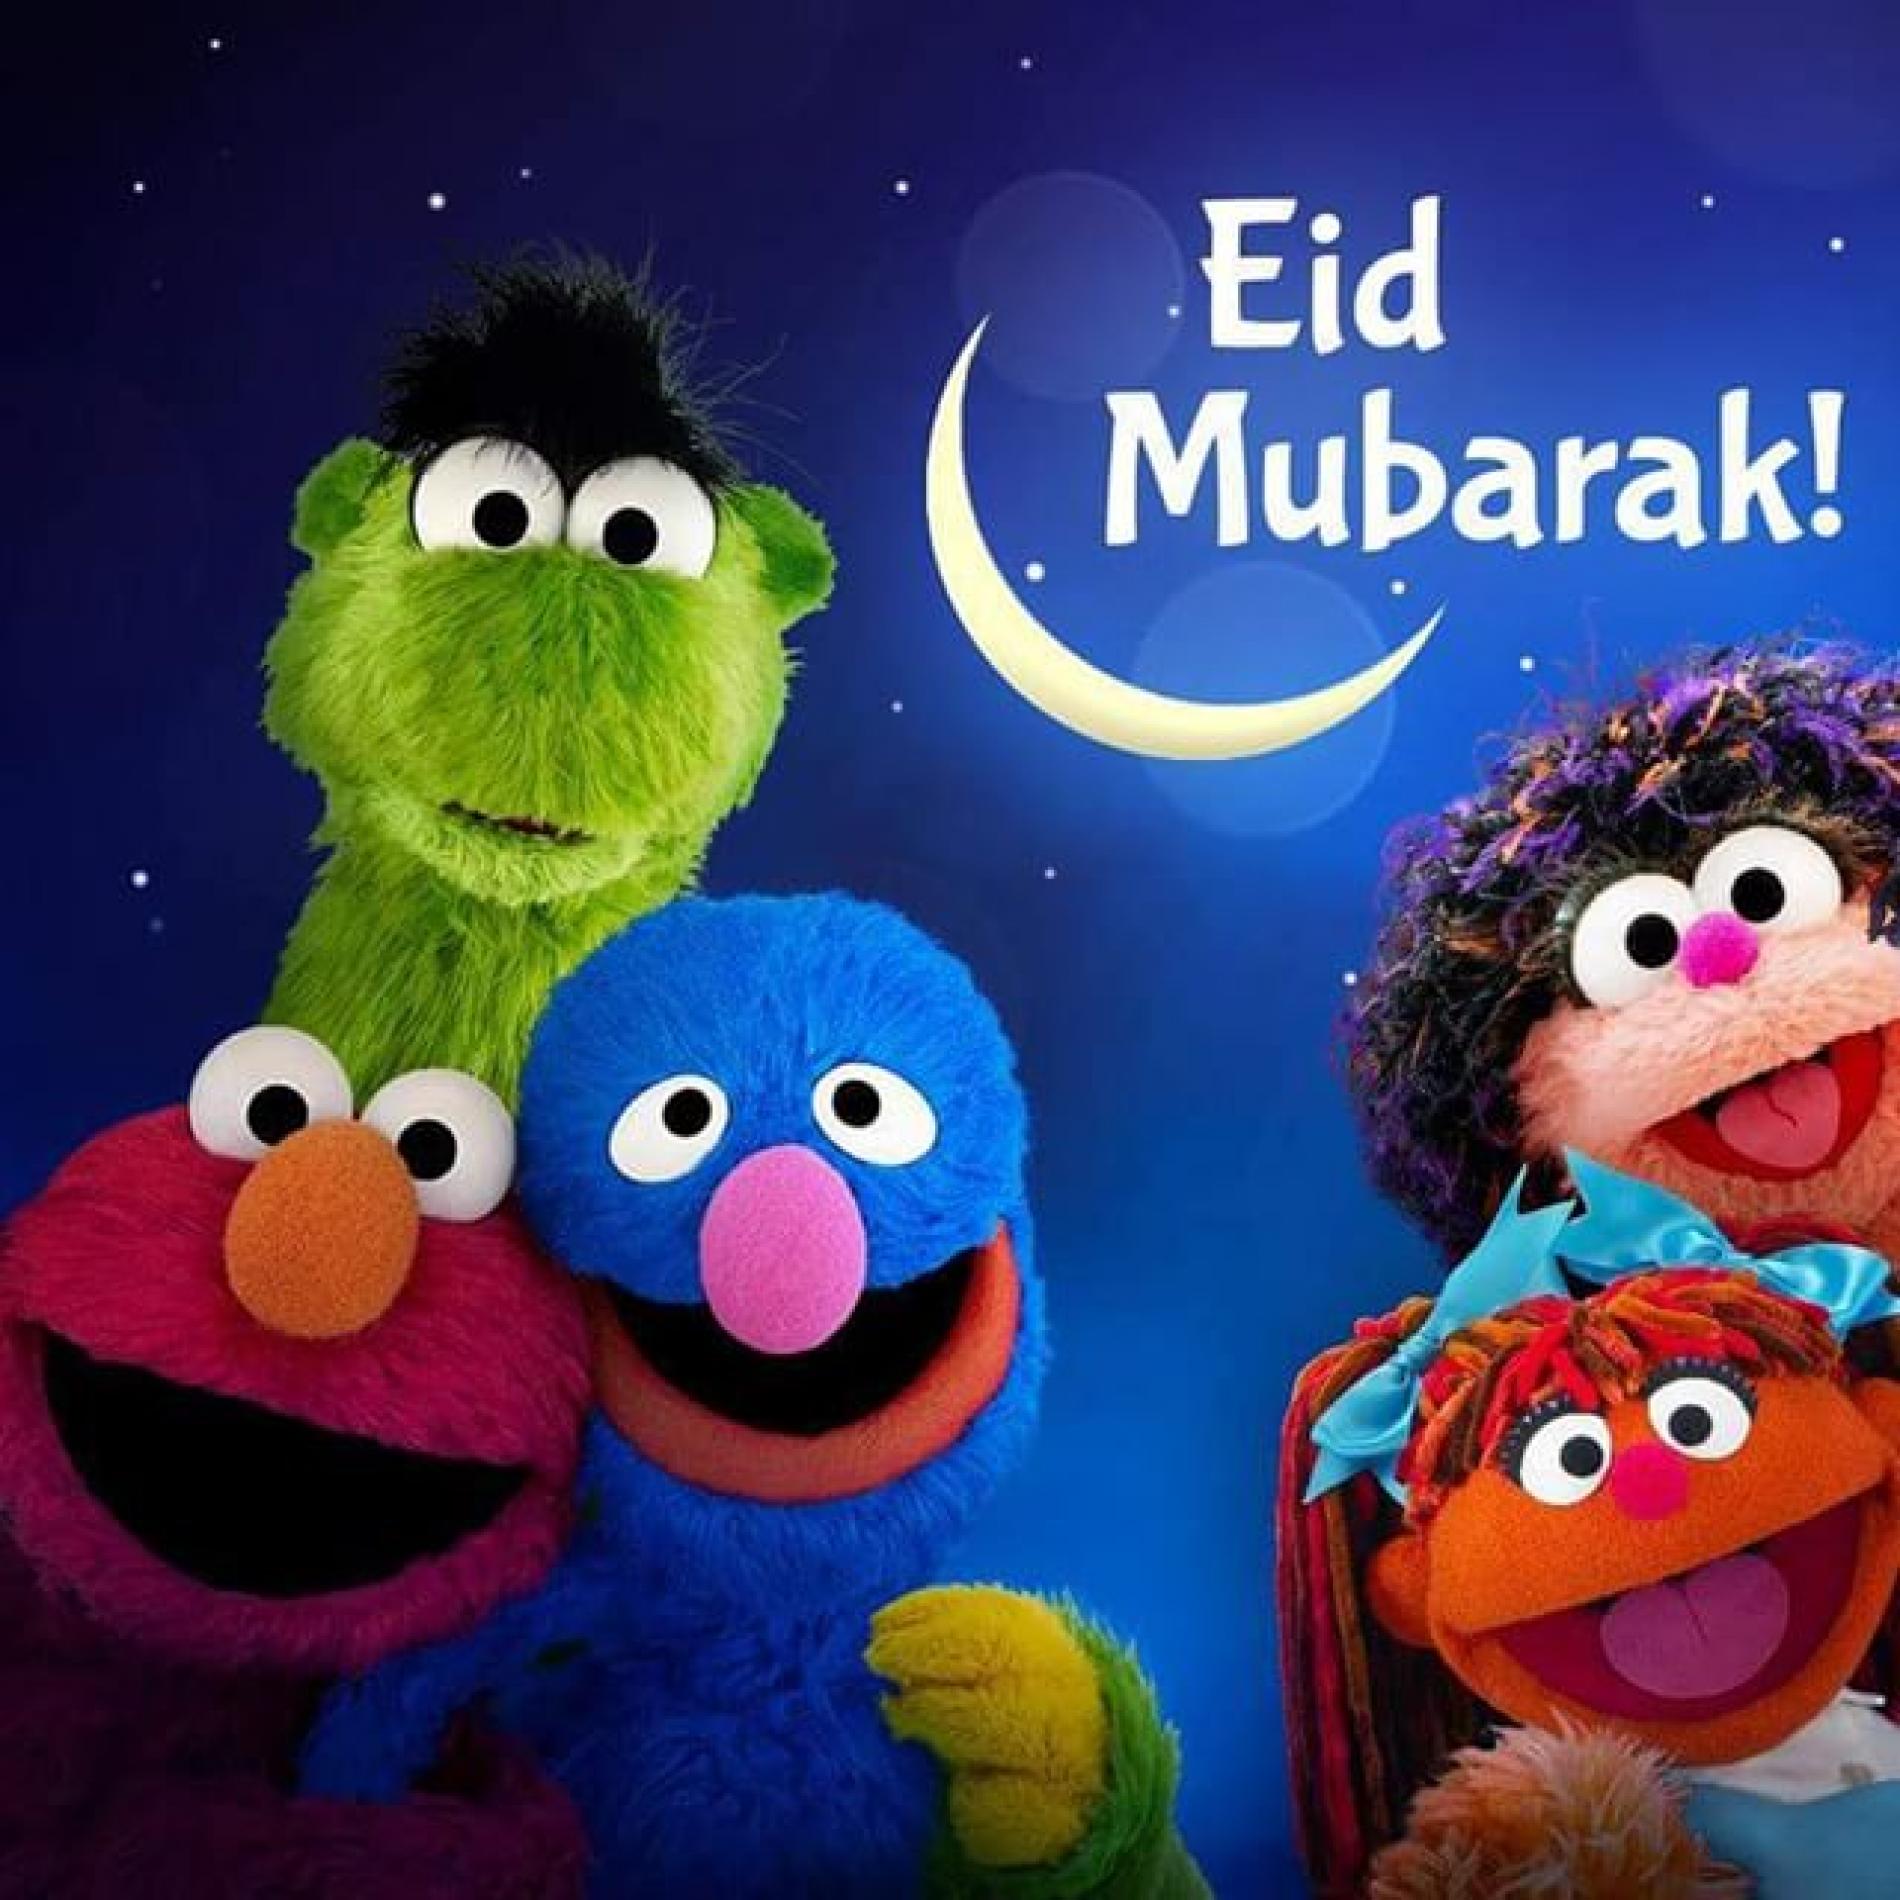 Eid Mubarak To You & Yours!